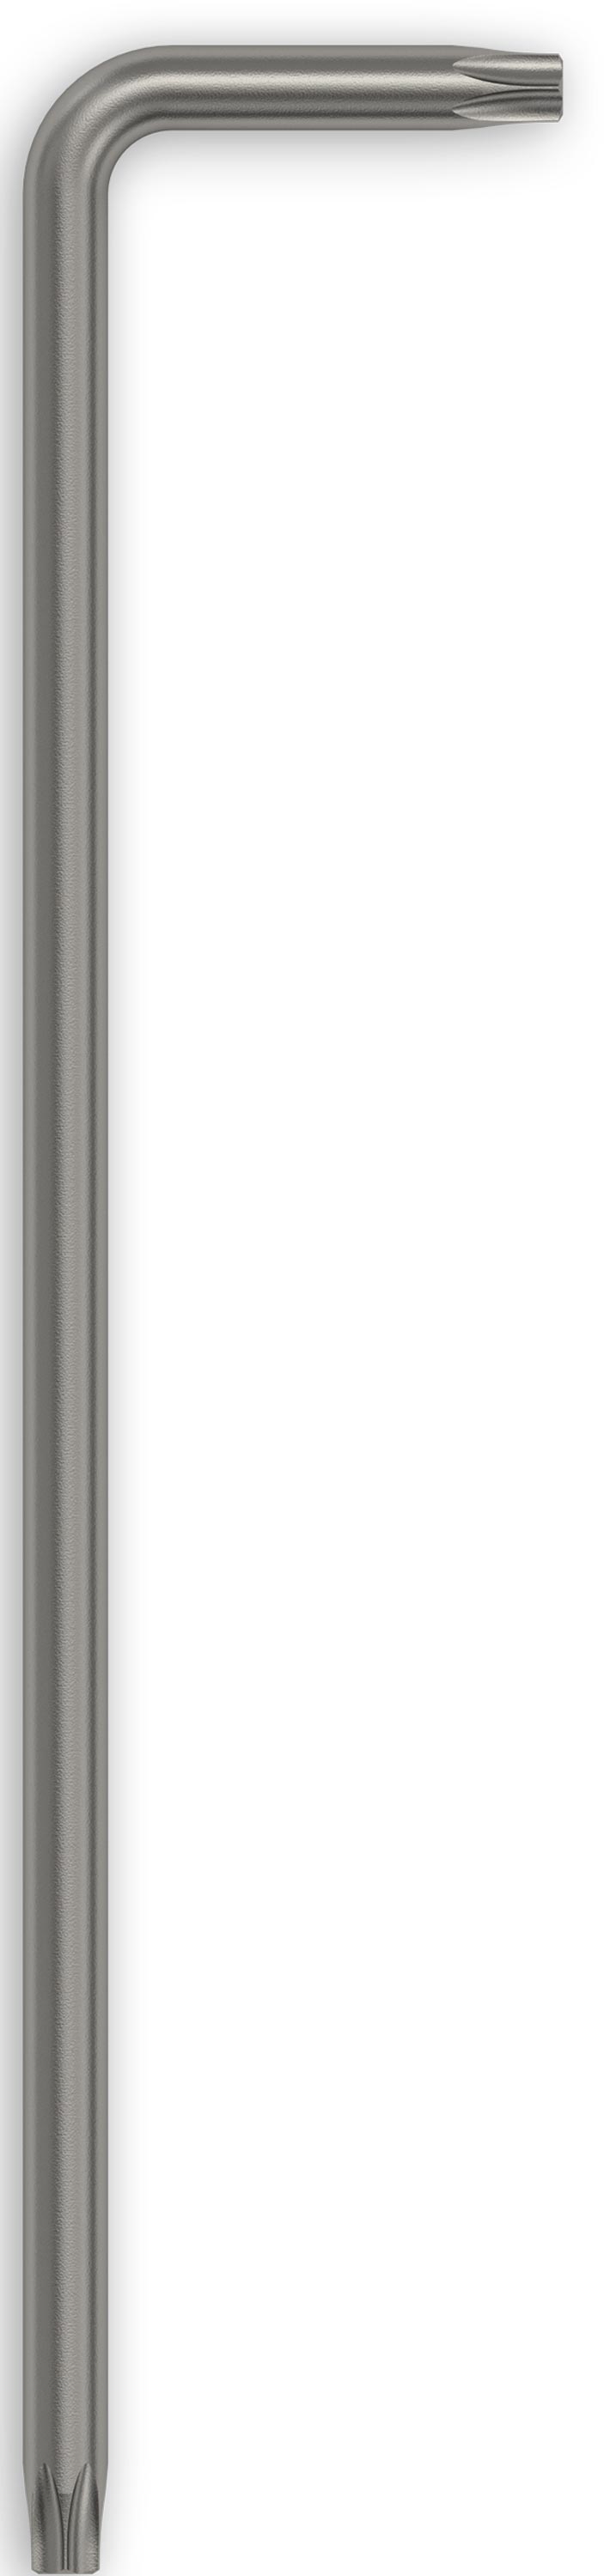 Felo Winkelschlüssel Rundklinge lang 348 Torx T 25 x 64,5 mm Stiftschlüssel Torx abgewinkelt | Steckschlüssel beidseitig nutzbar - Serie 348 (FL-34802510) Bild-01